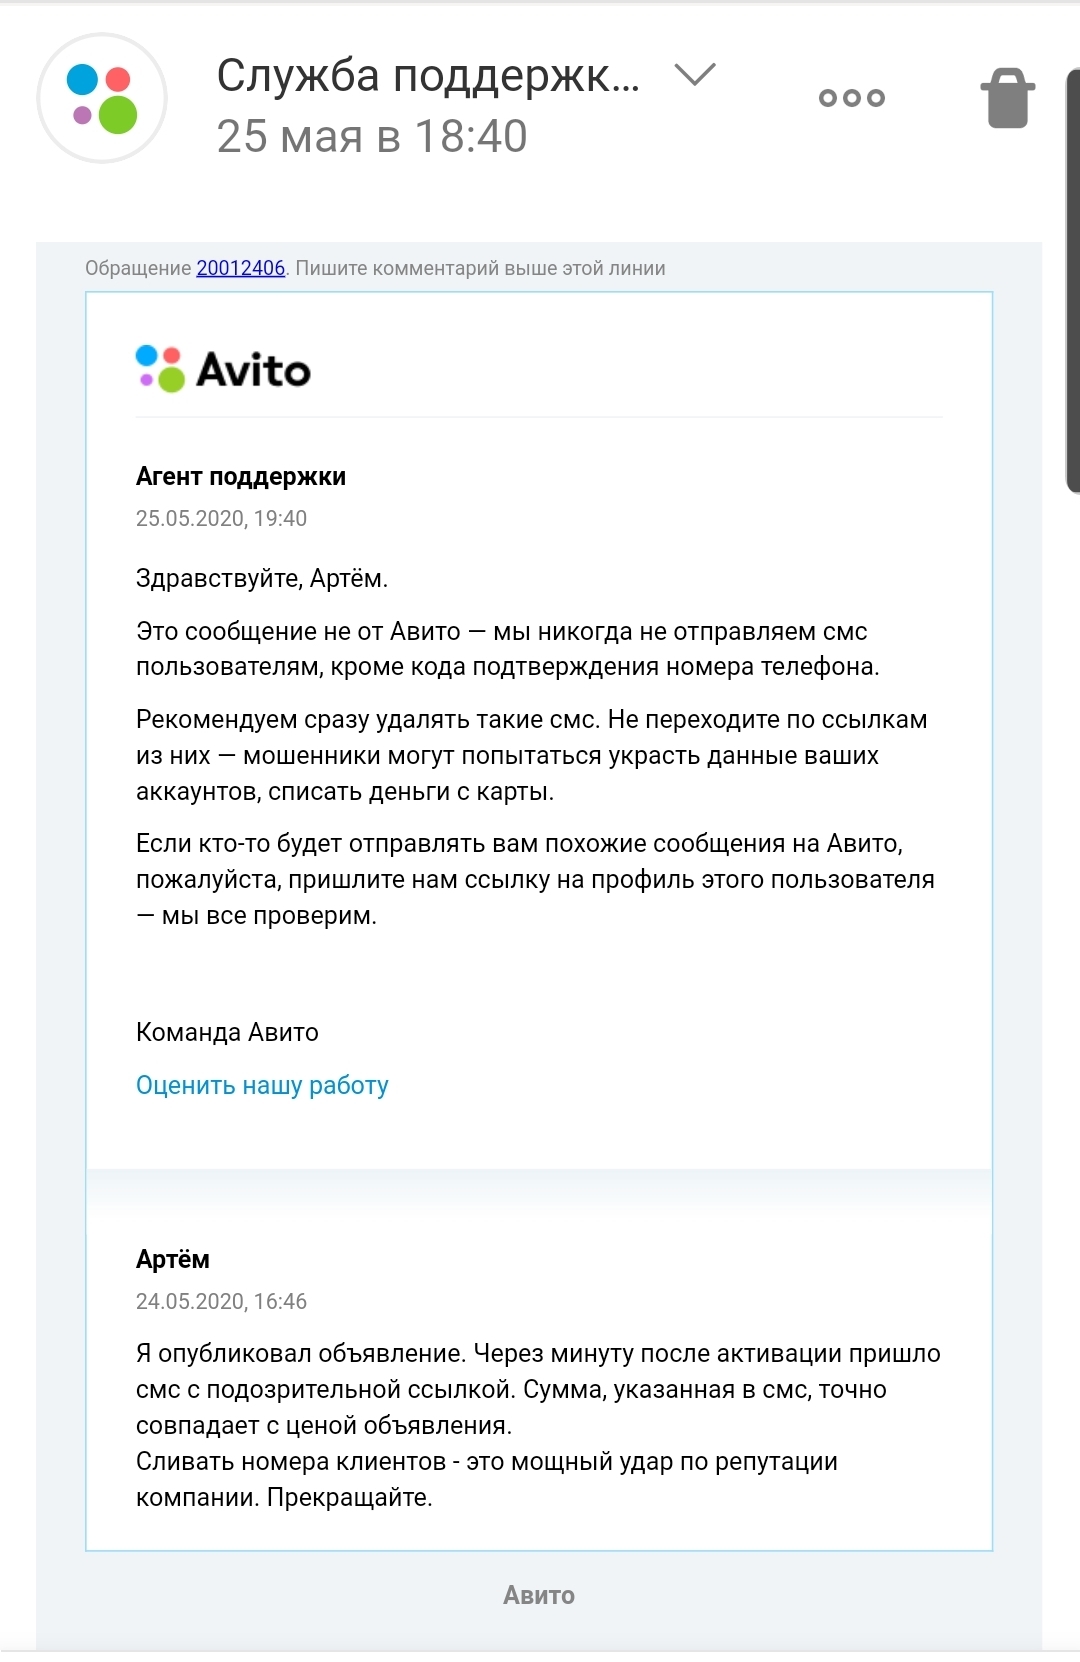 Avito leaks data? - My, Avito, Data leak, Spam, Support service, Longpost, Divorce for money